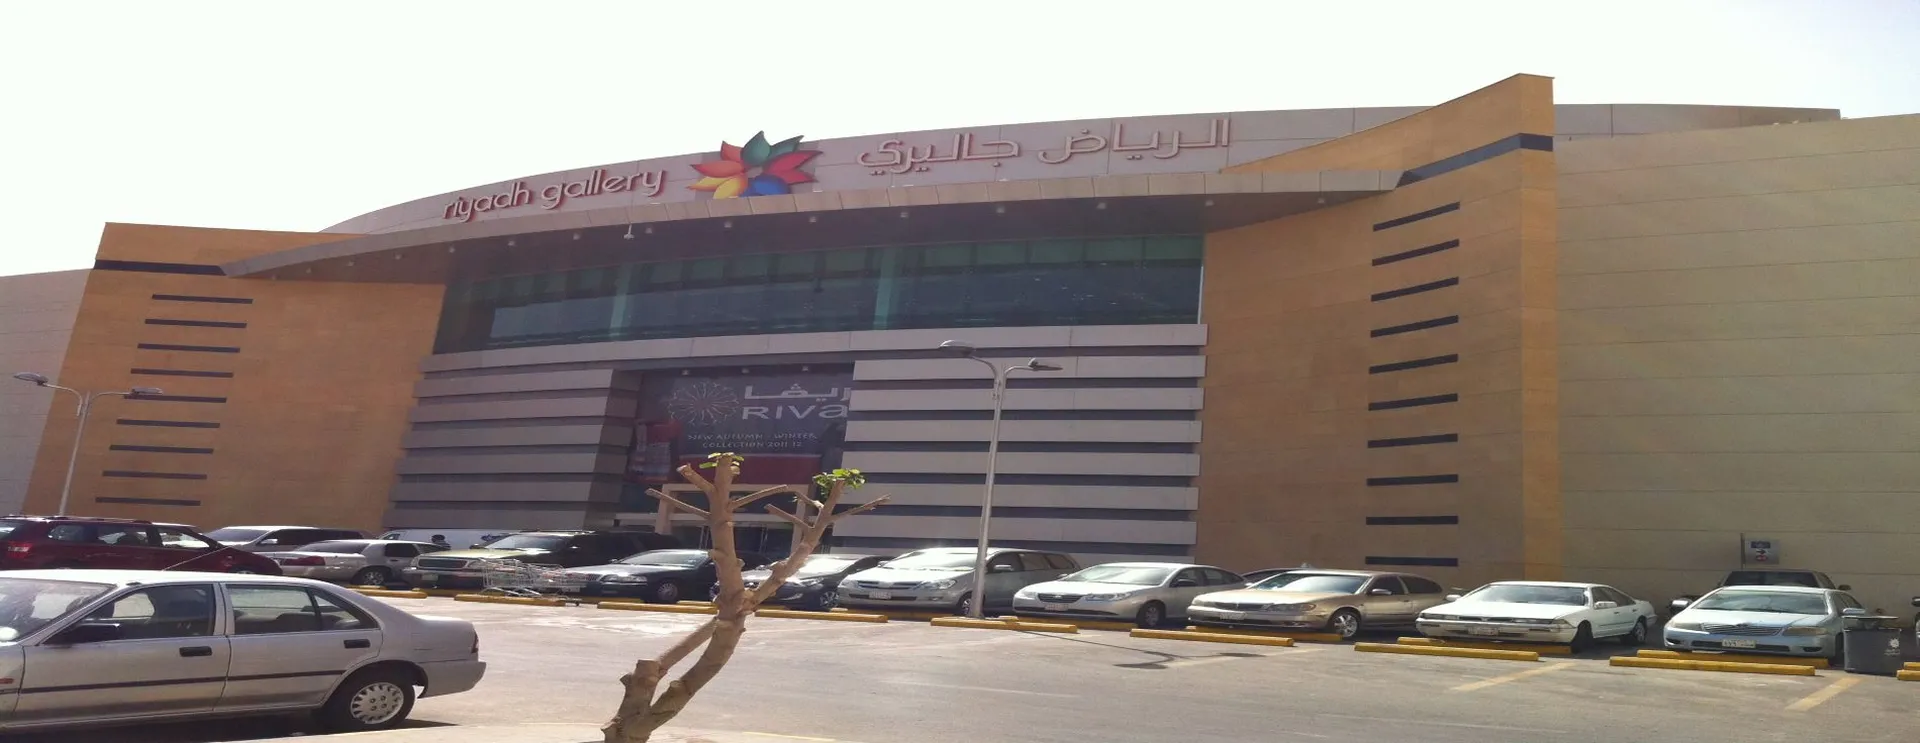 Explore Riyadh Gallery Mall 